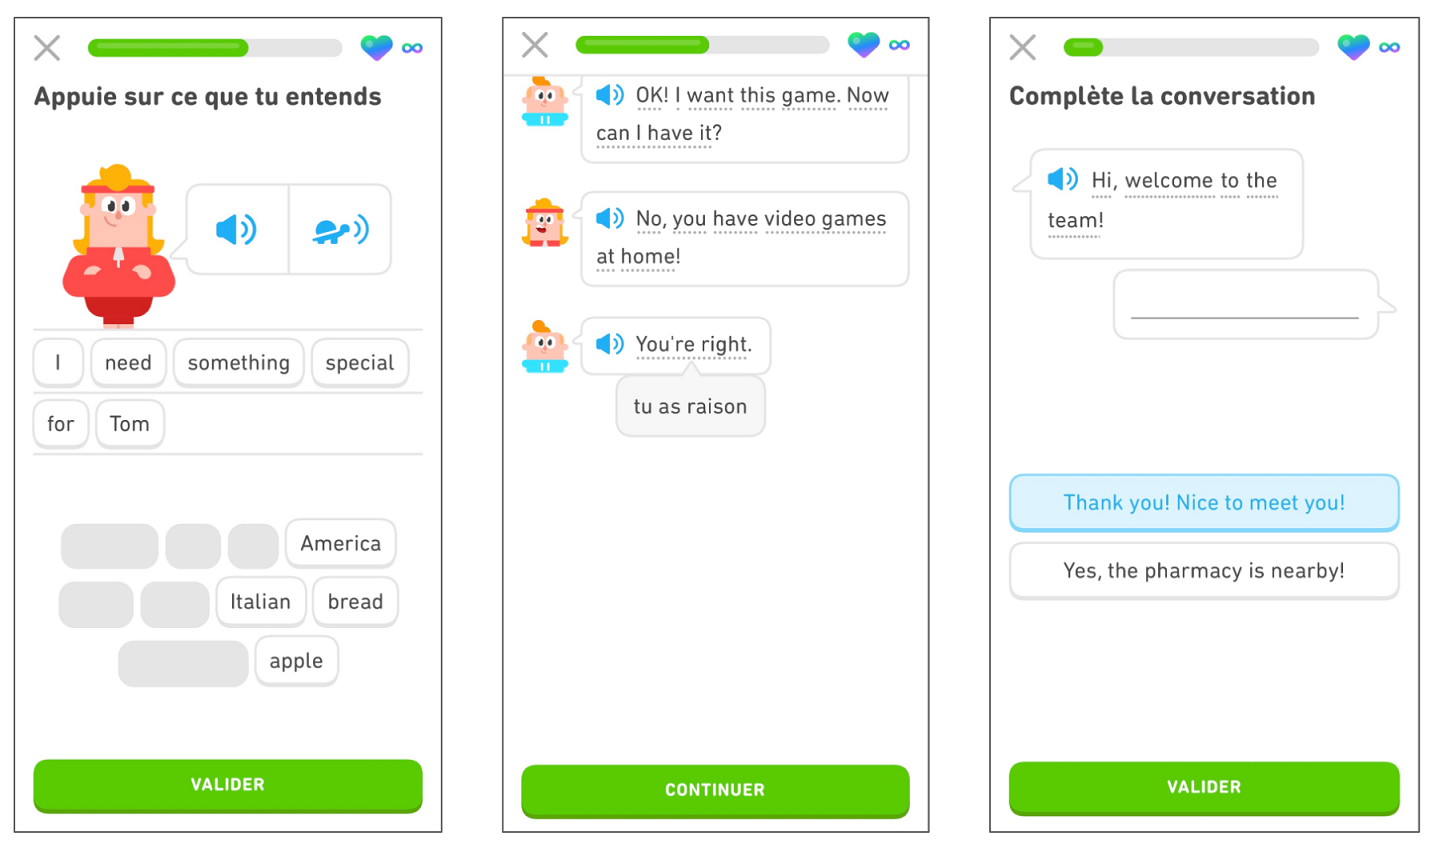 trois écrans montrant les cours de langue de Duolingo. Sur le premier écran, l’exercice demande à l’utilisateur d’appuyer sur les mots pour former la phrase qui est prononcée. En bas de l’écran apparaît le mot « Valider » pour que l’utilisateur valide ensuite sa réponse. Sur le deuxième écran, il est présenté comment afficher des indices au cours des leçons. L’utilisateur a appuyé sur « You’re right. » et l’indice « tu as raison » apparaît. En bas de l’écran, le mot « Continuer » incite l’utilisateur à valider sa réponse et à poursuivre l’histoire..Sur le troisième écran, l'exercice demande à l’utilisateur de compléter une conversation. La conversation commence par « Hi, welcome to the team! » et l’utilisateur doit sélectionner la réponse correcte « Thank you! Nice to meet you! ». En bas de l’écran apparaît le mot « Valider » pour que l’utilisateur valide ensuite sa réponse.